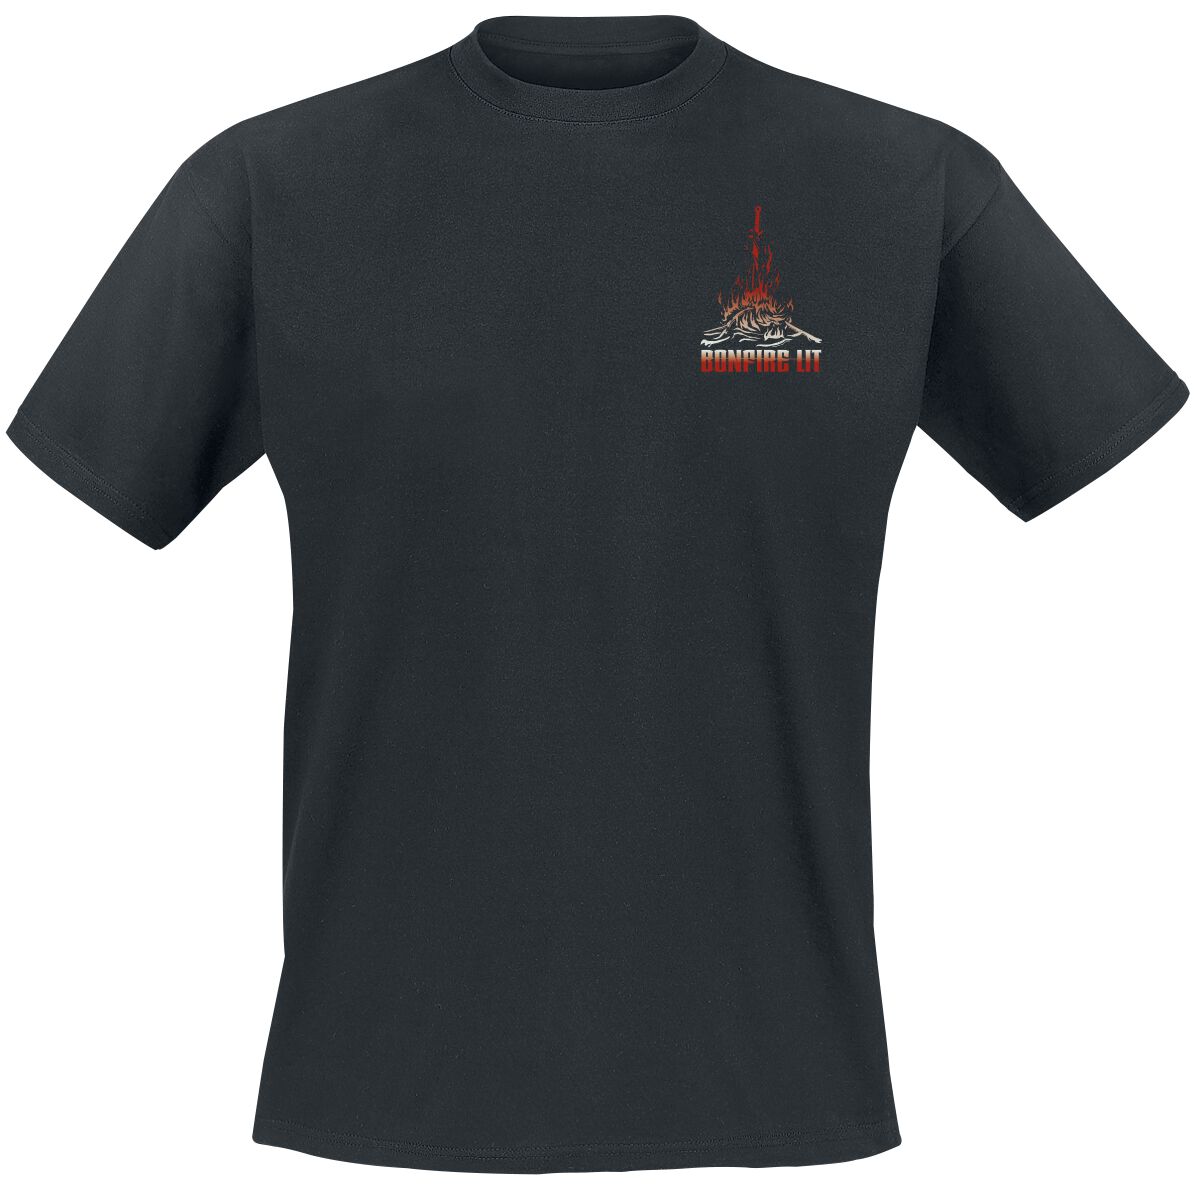 Dark Souls - Gaming T-Shirt - Bonfire Lit - S bis XXL - für Männer - Größe M - schwarz  - EMP exklusives Merchandise!